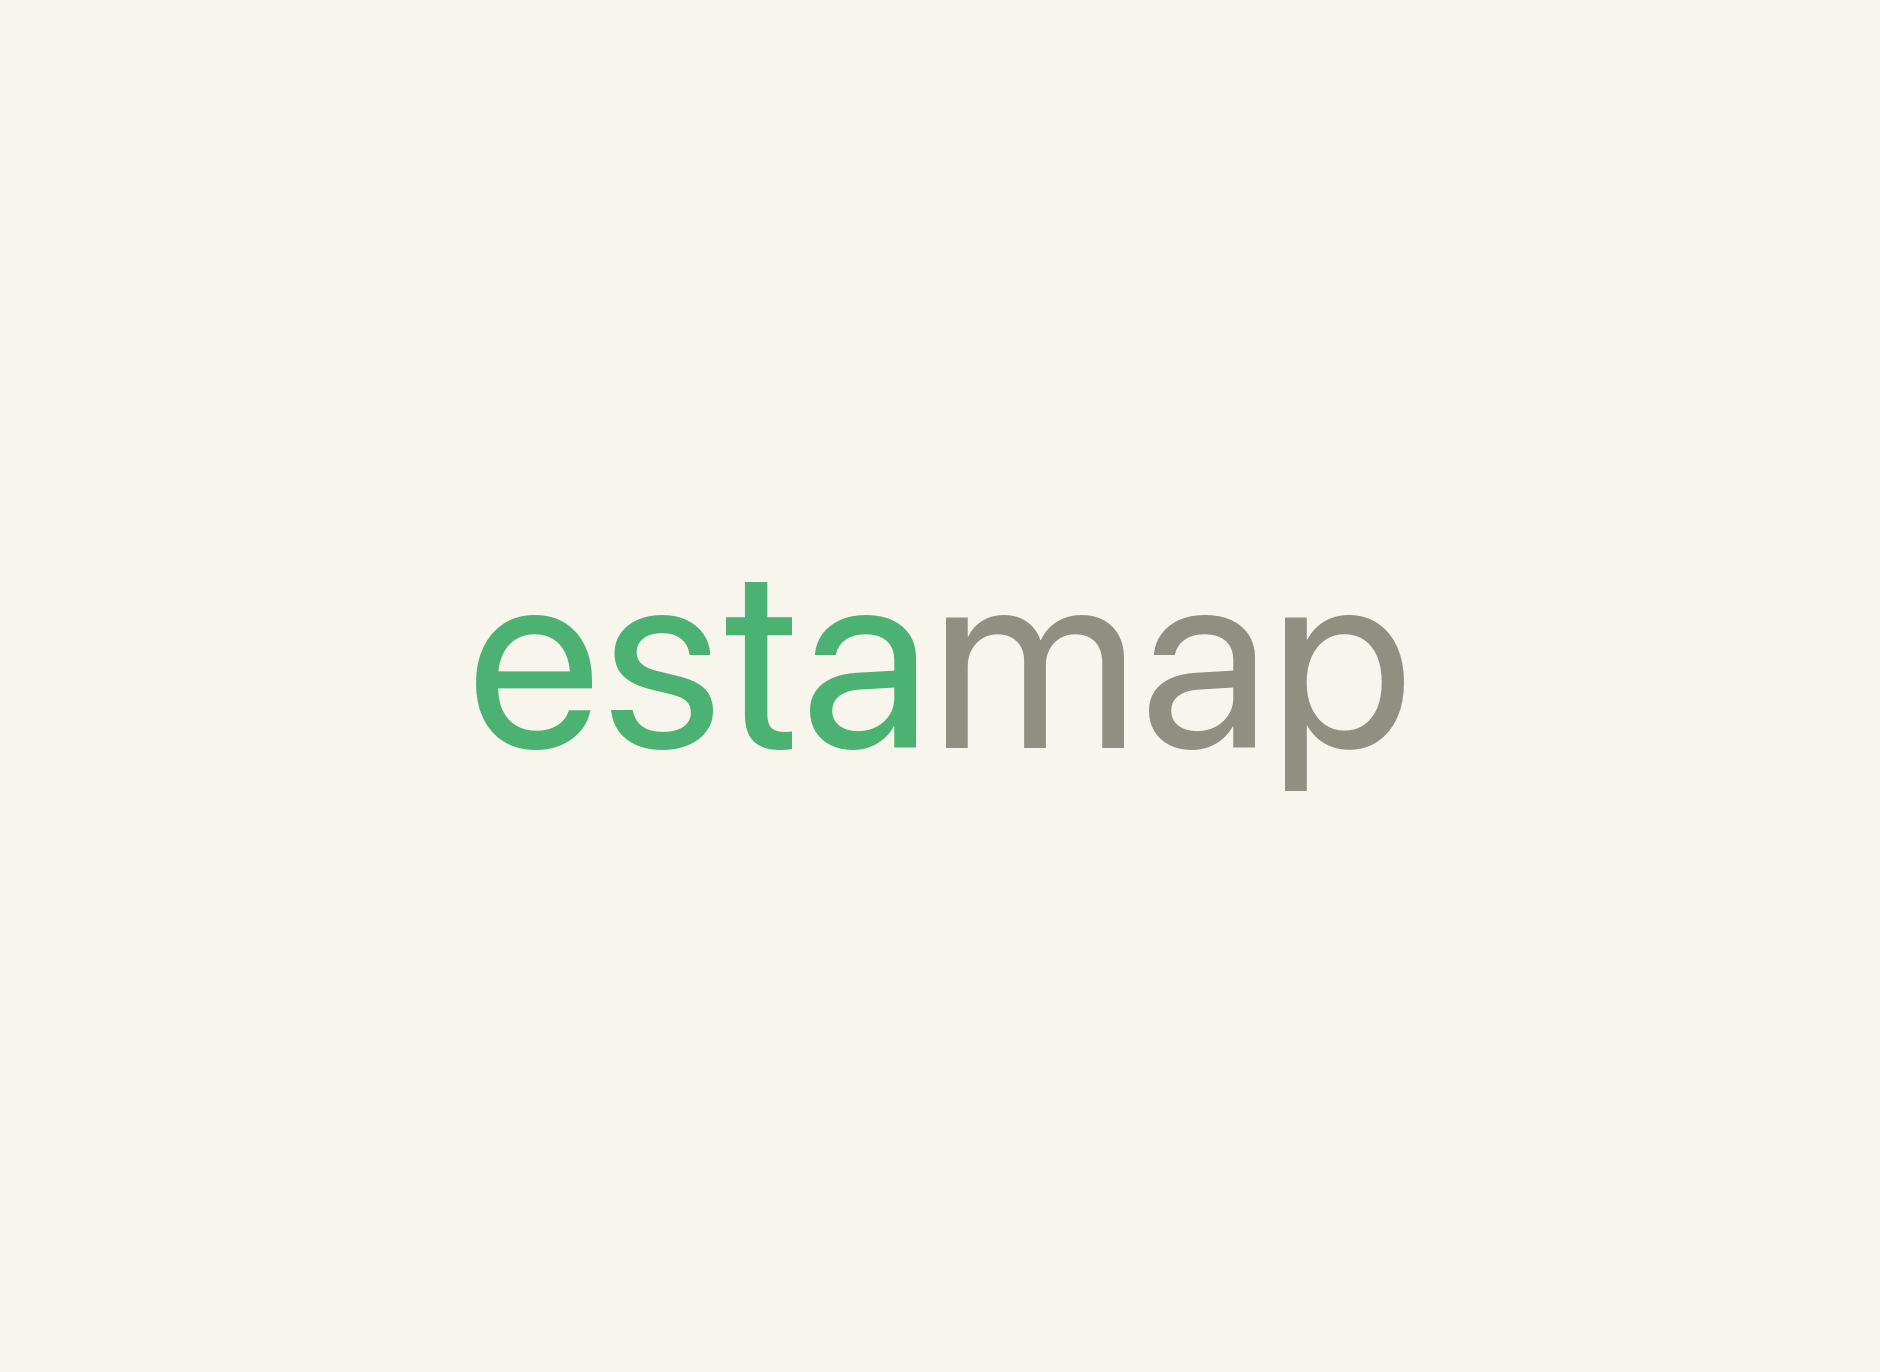 estamap (logo)